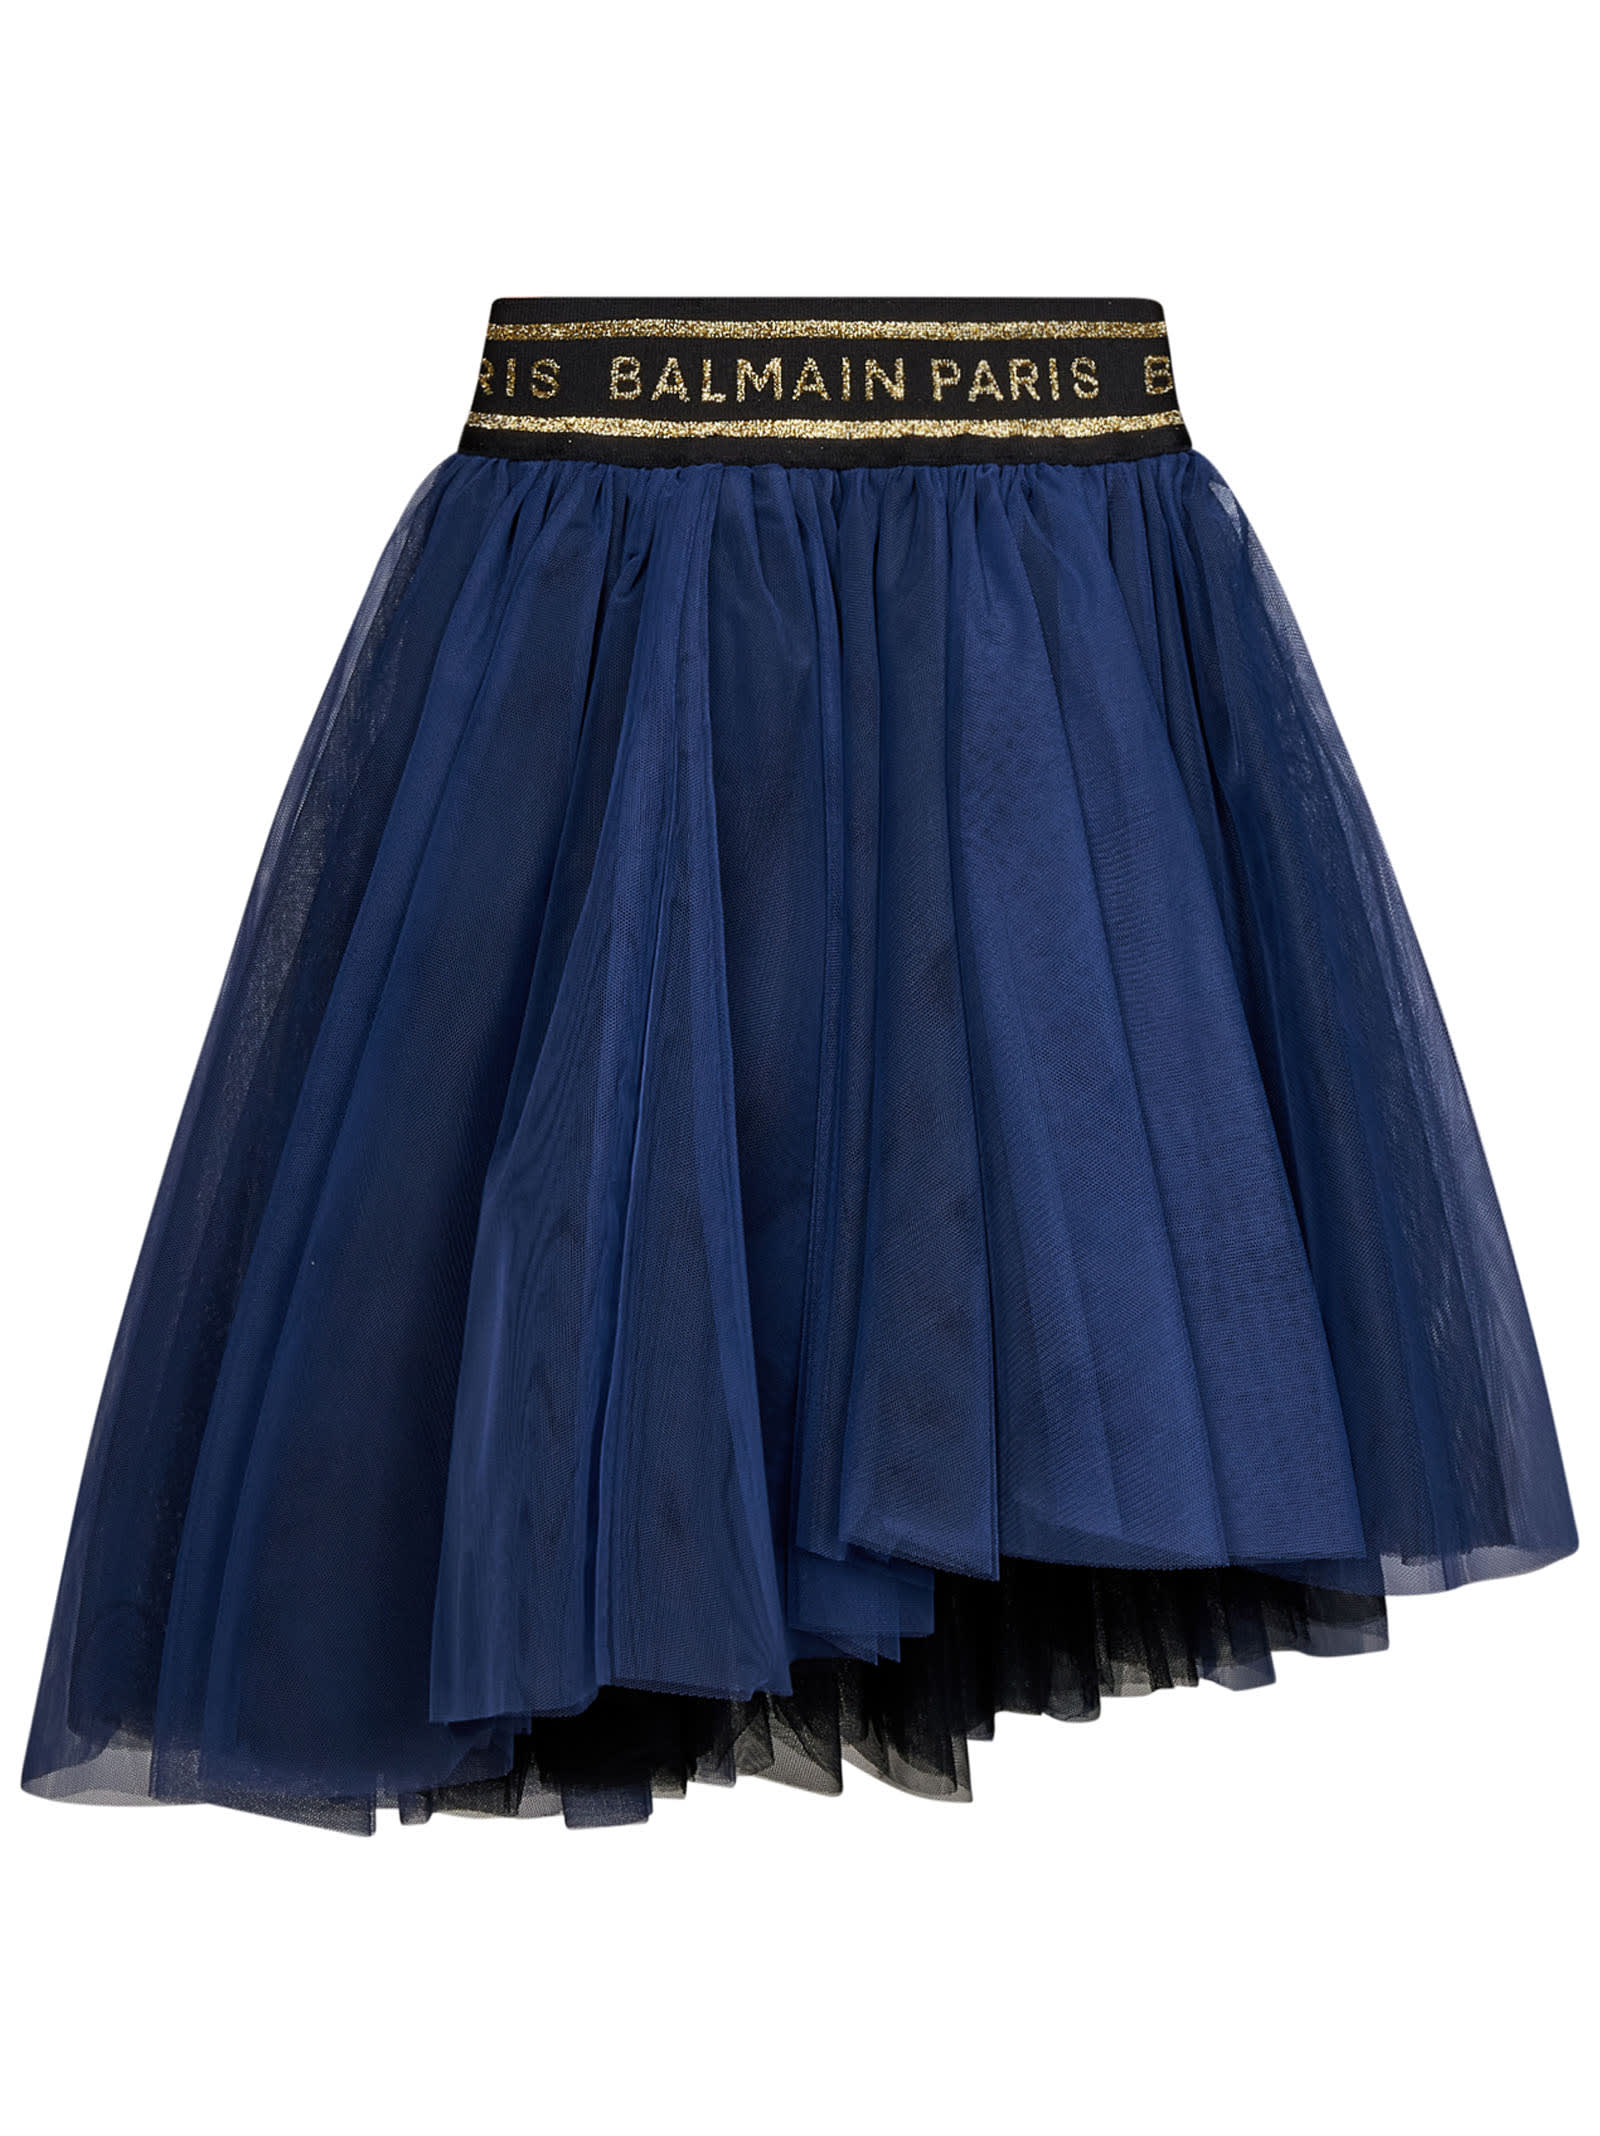 Balmain Kids' Skirt In Blue